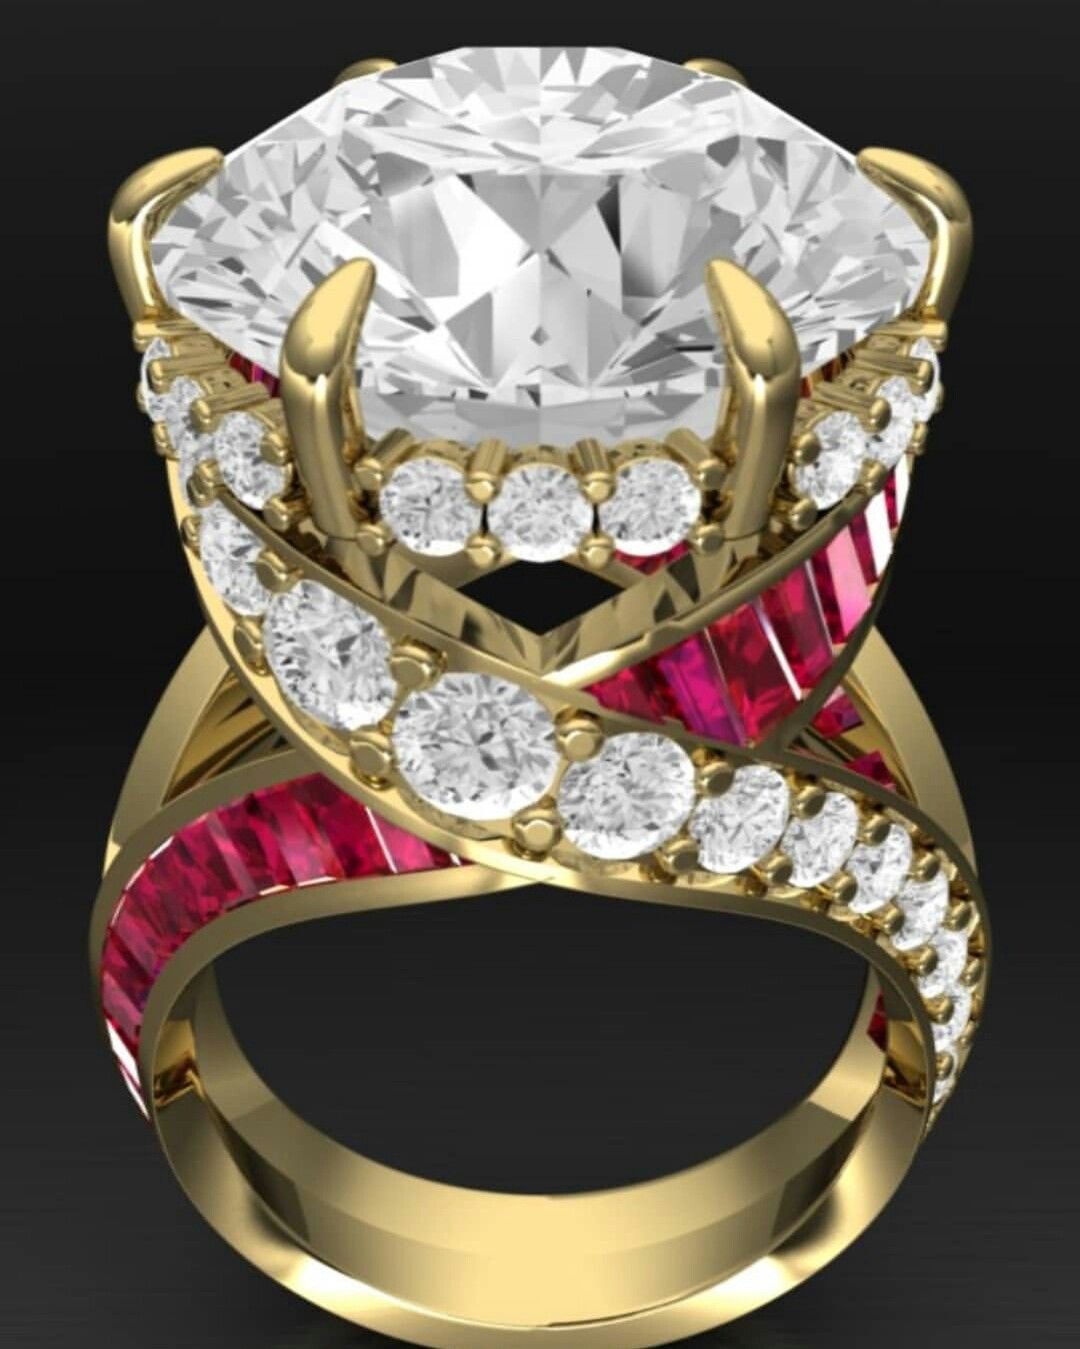 Самые драгоценности. Золотое кольцо Рубин бриллианты эксклюзив. Кольцо Faberge 18 карат. Кольцо Голд Даймонд. Дорогие украшения с бриллиантами.